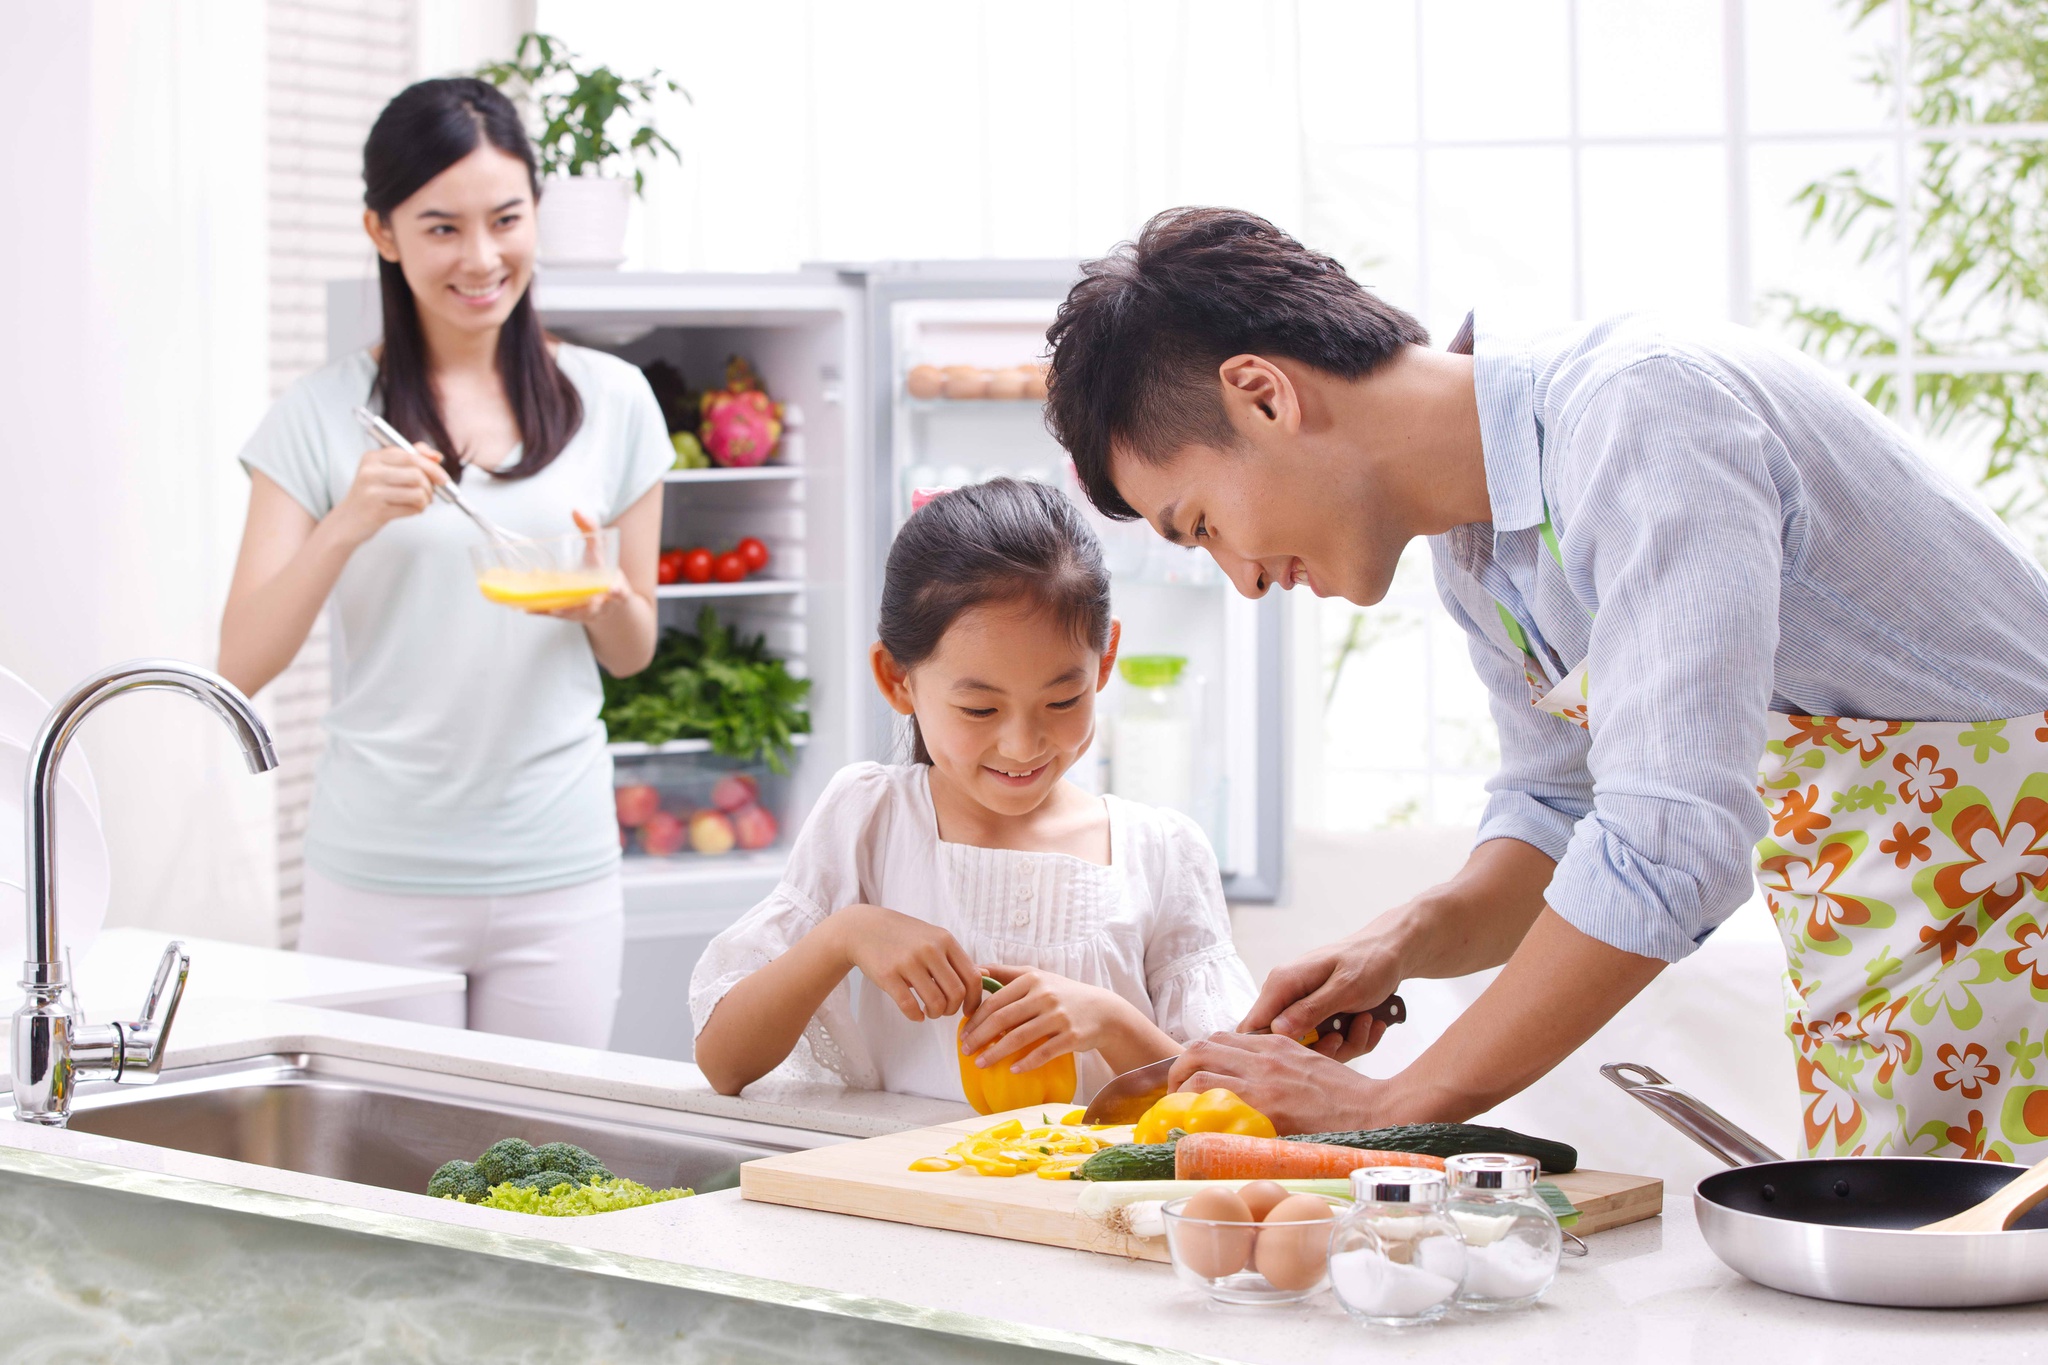 Chế biến thực phẩm an toàn đóng vai trò quan trọng đối với sức khỏe cả gia đình /// Ảnh: Shutterstock